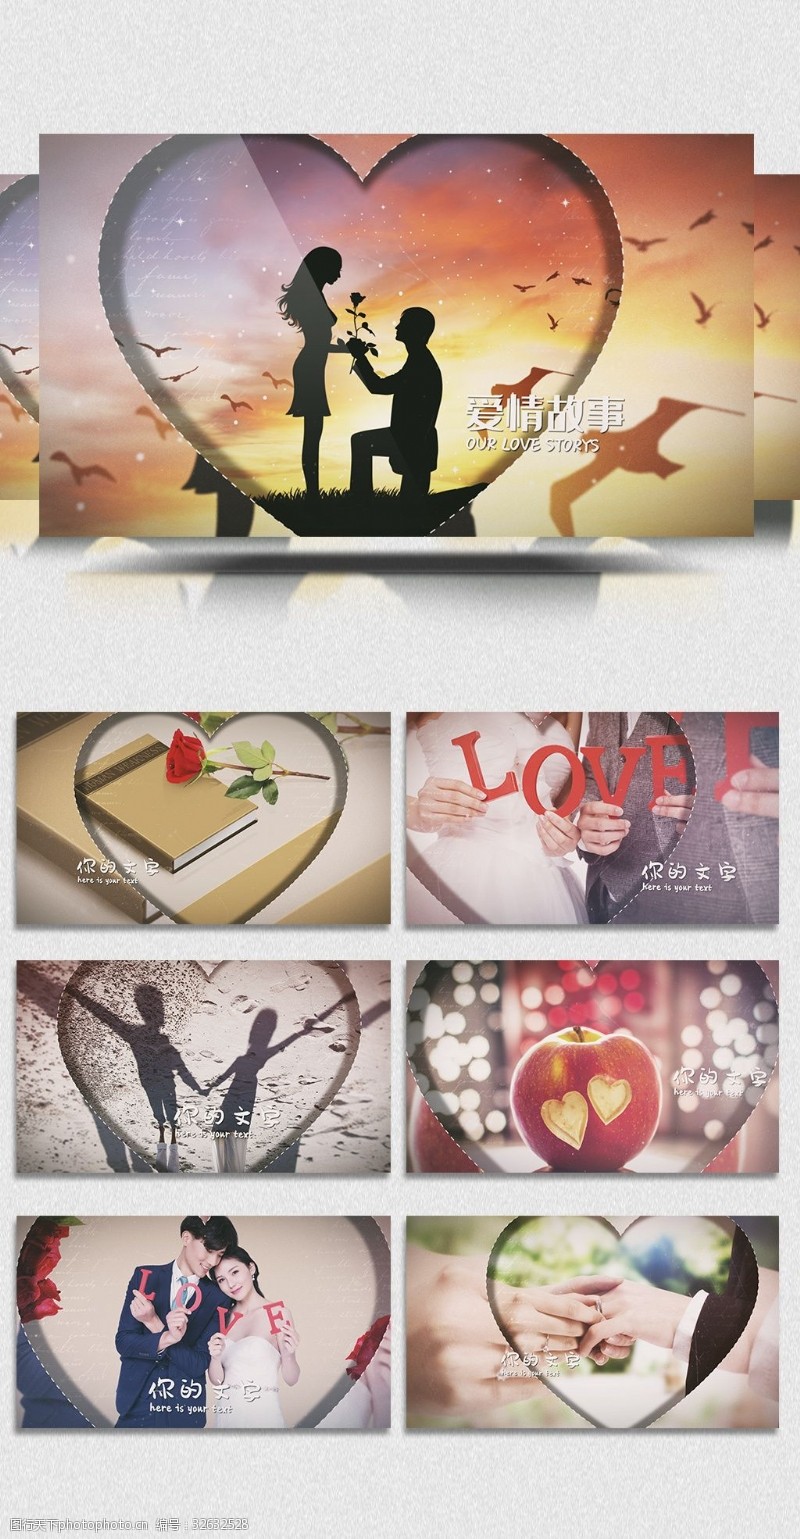 企业画册模板下载欧式唯美浪漫爱情故事相册展示模板